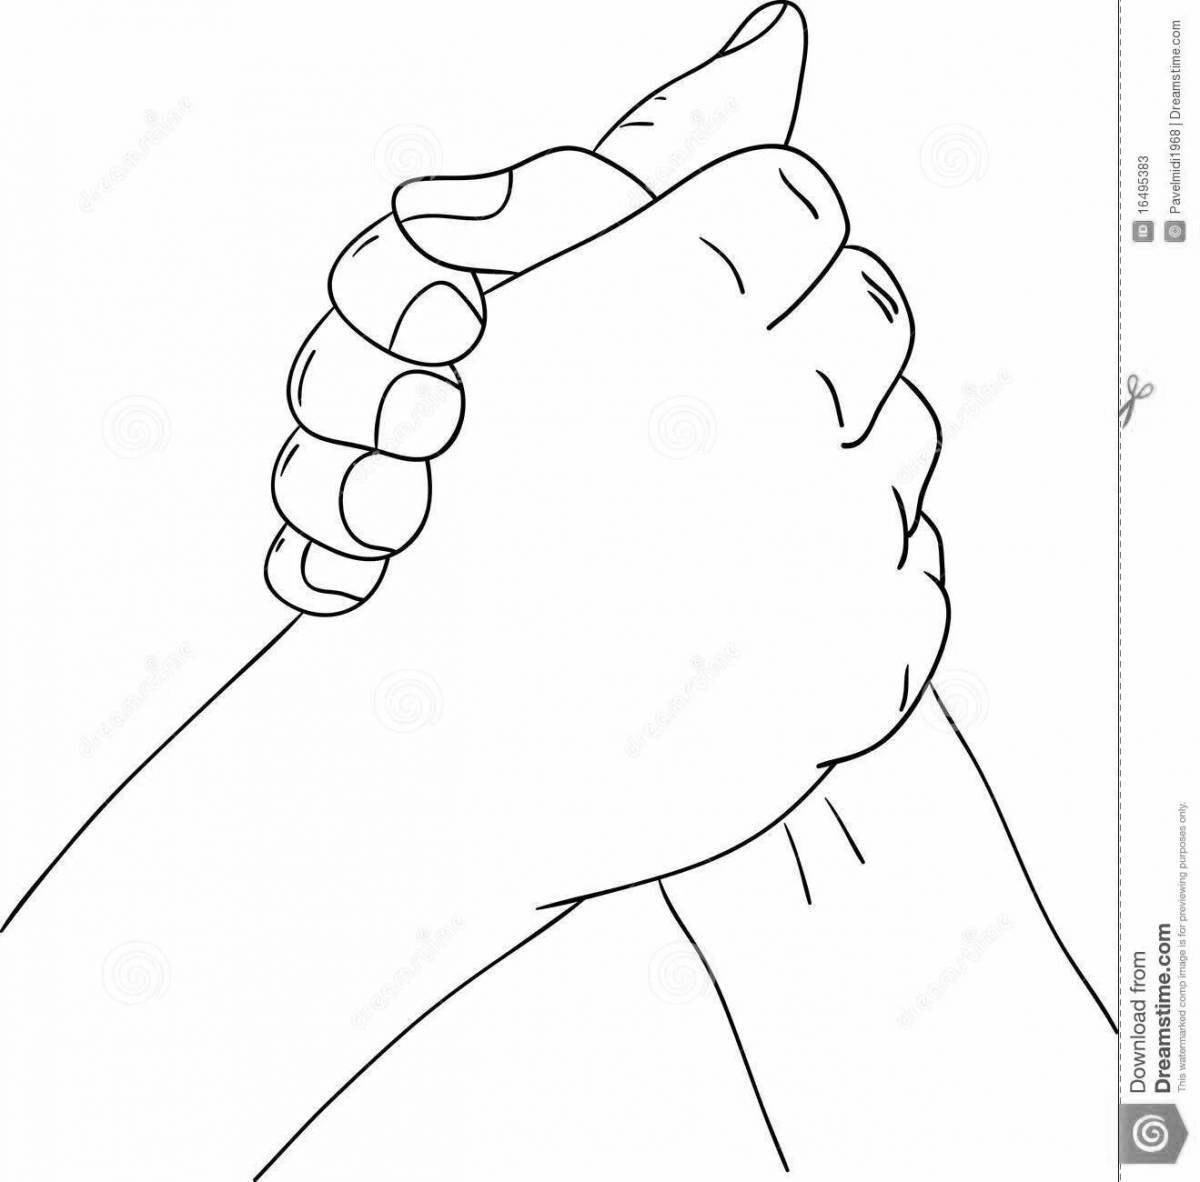 Handshake for kids #19